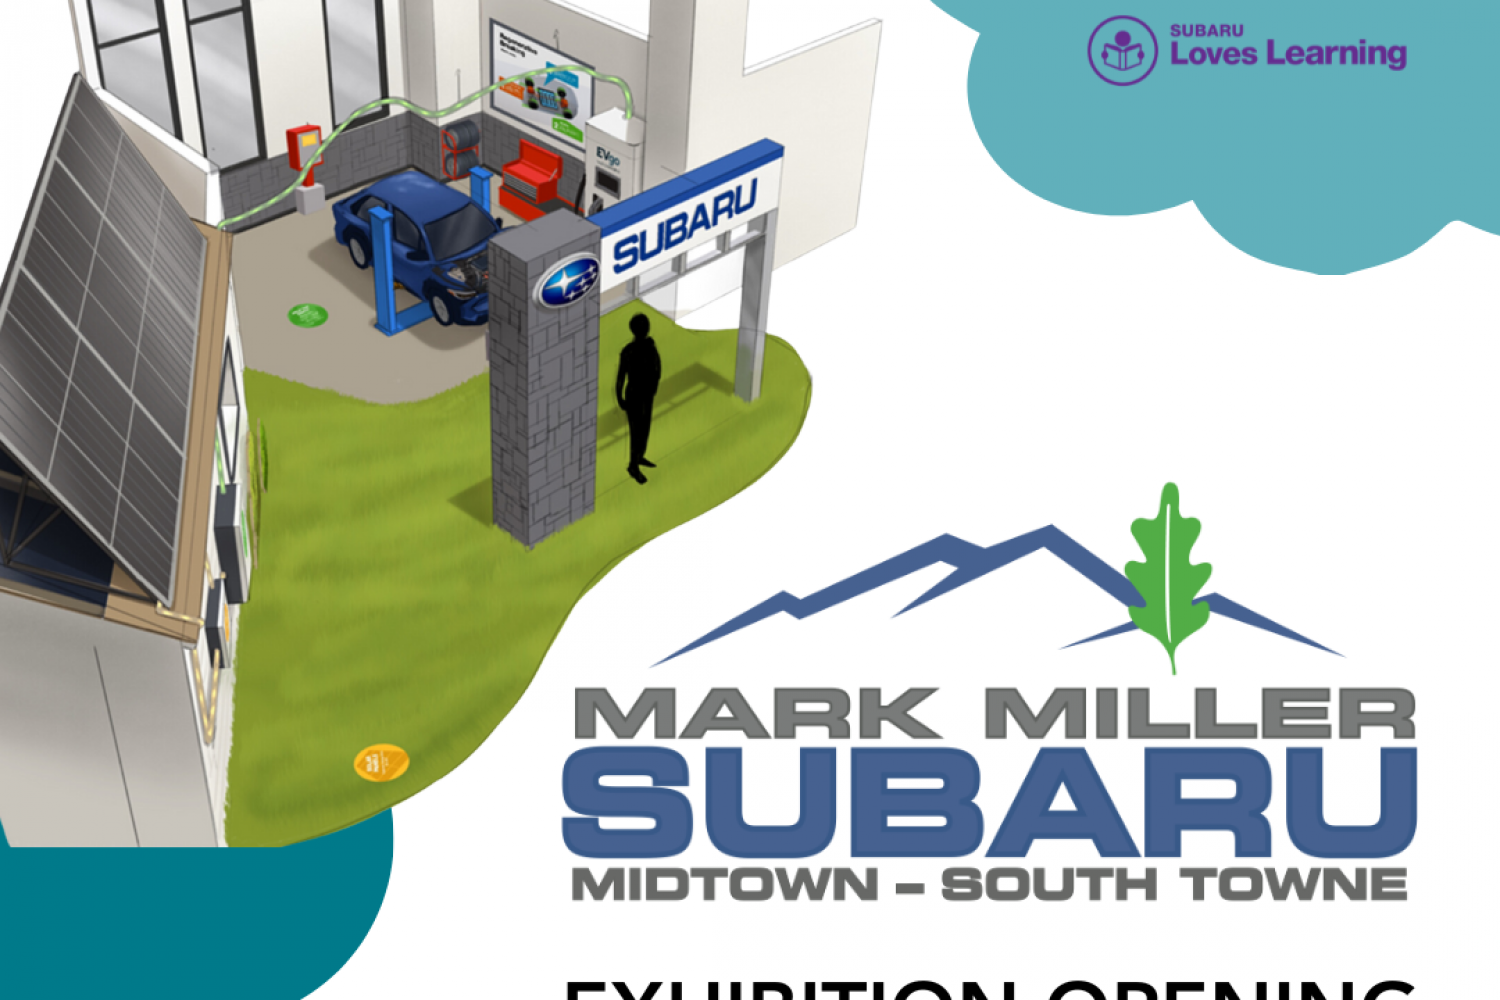 Mark Miller Subaru Exhibit Opening